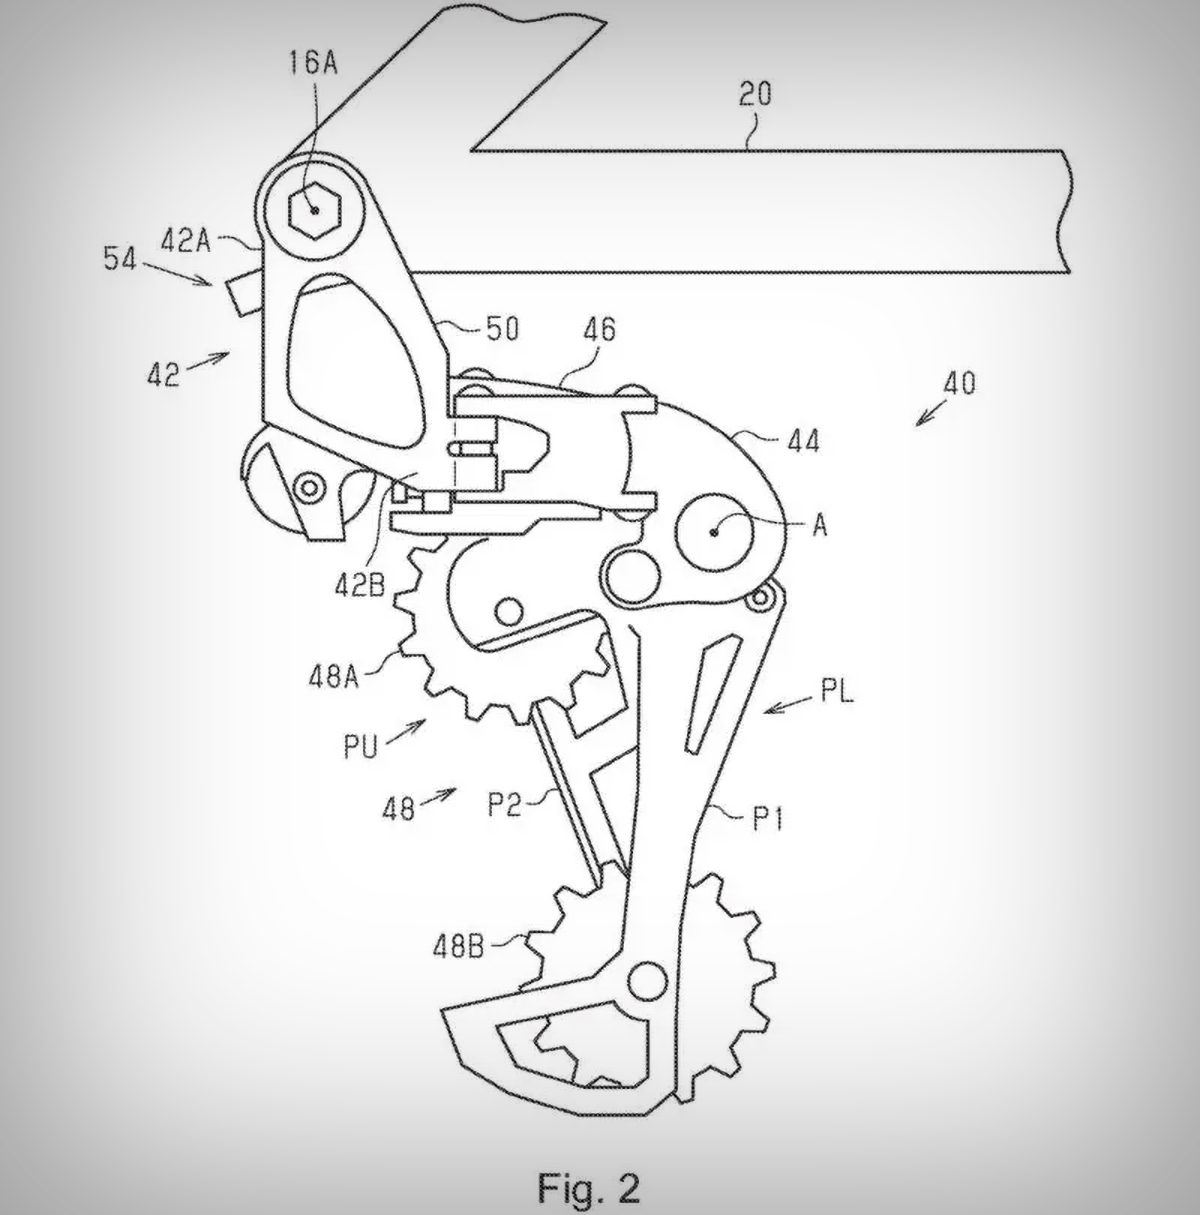 Una patente de Shimano muestra un nuevo cambio trasero (electrónico e inalámbrico) de anclaje directo al cuadro